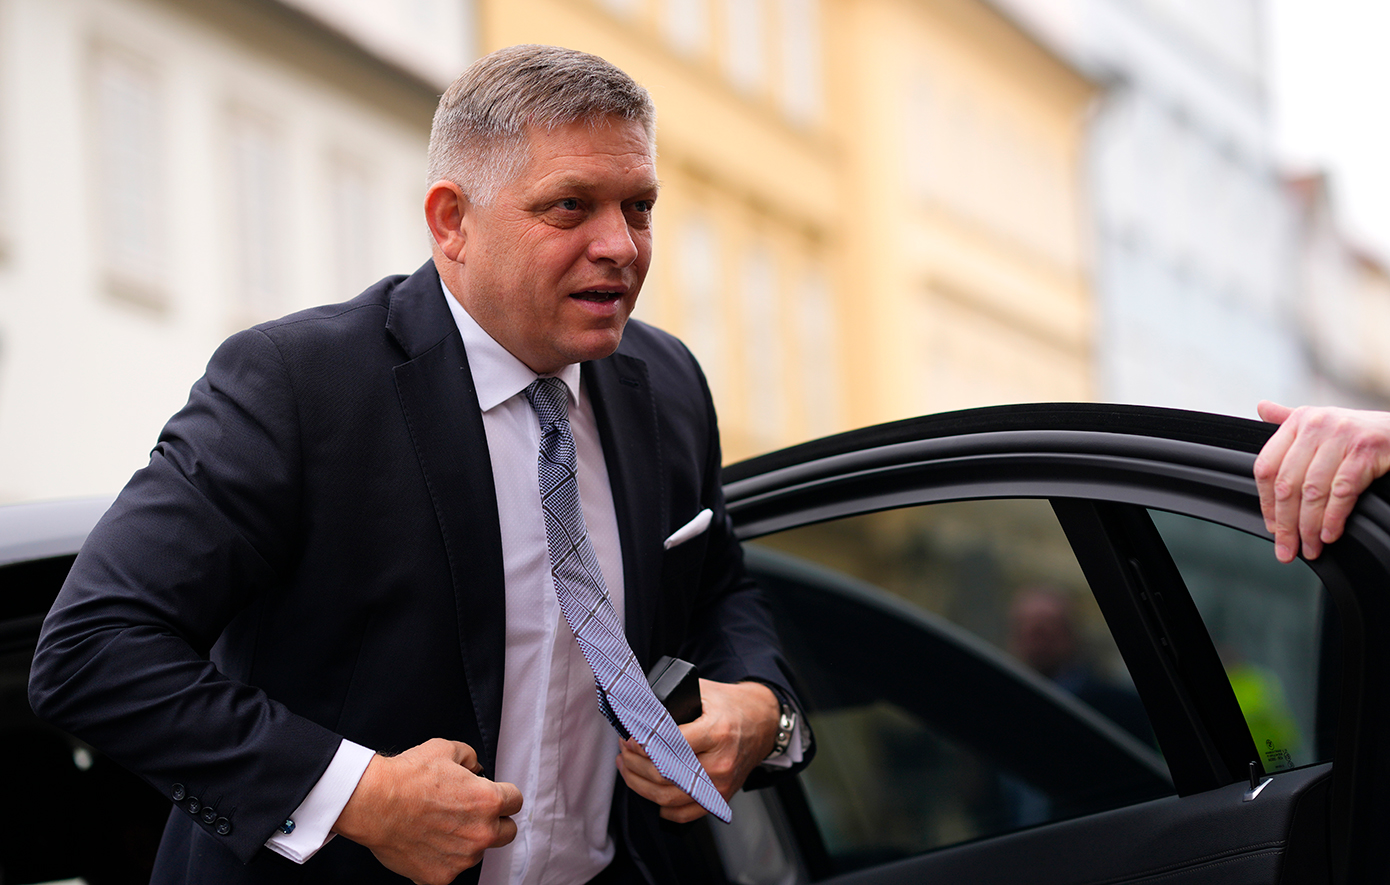 Δεν διατρέχει πλέον κίνδυνο η ζωή του Σλοβάκου πρωθυπουργού, λέει ο αντιπρόεδρος της κυβέρνησης